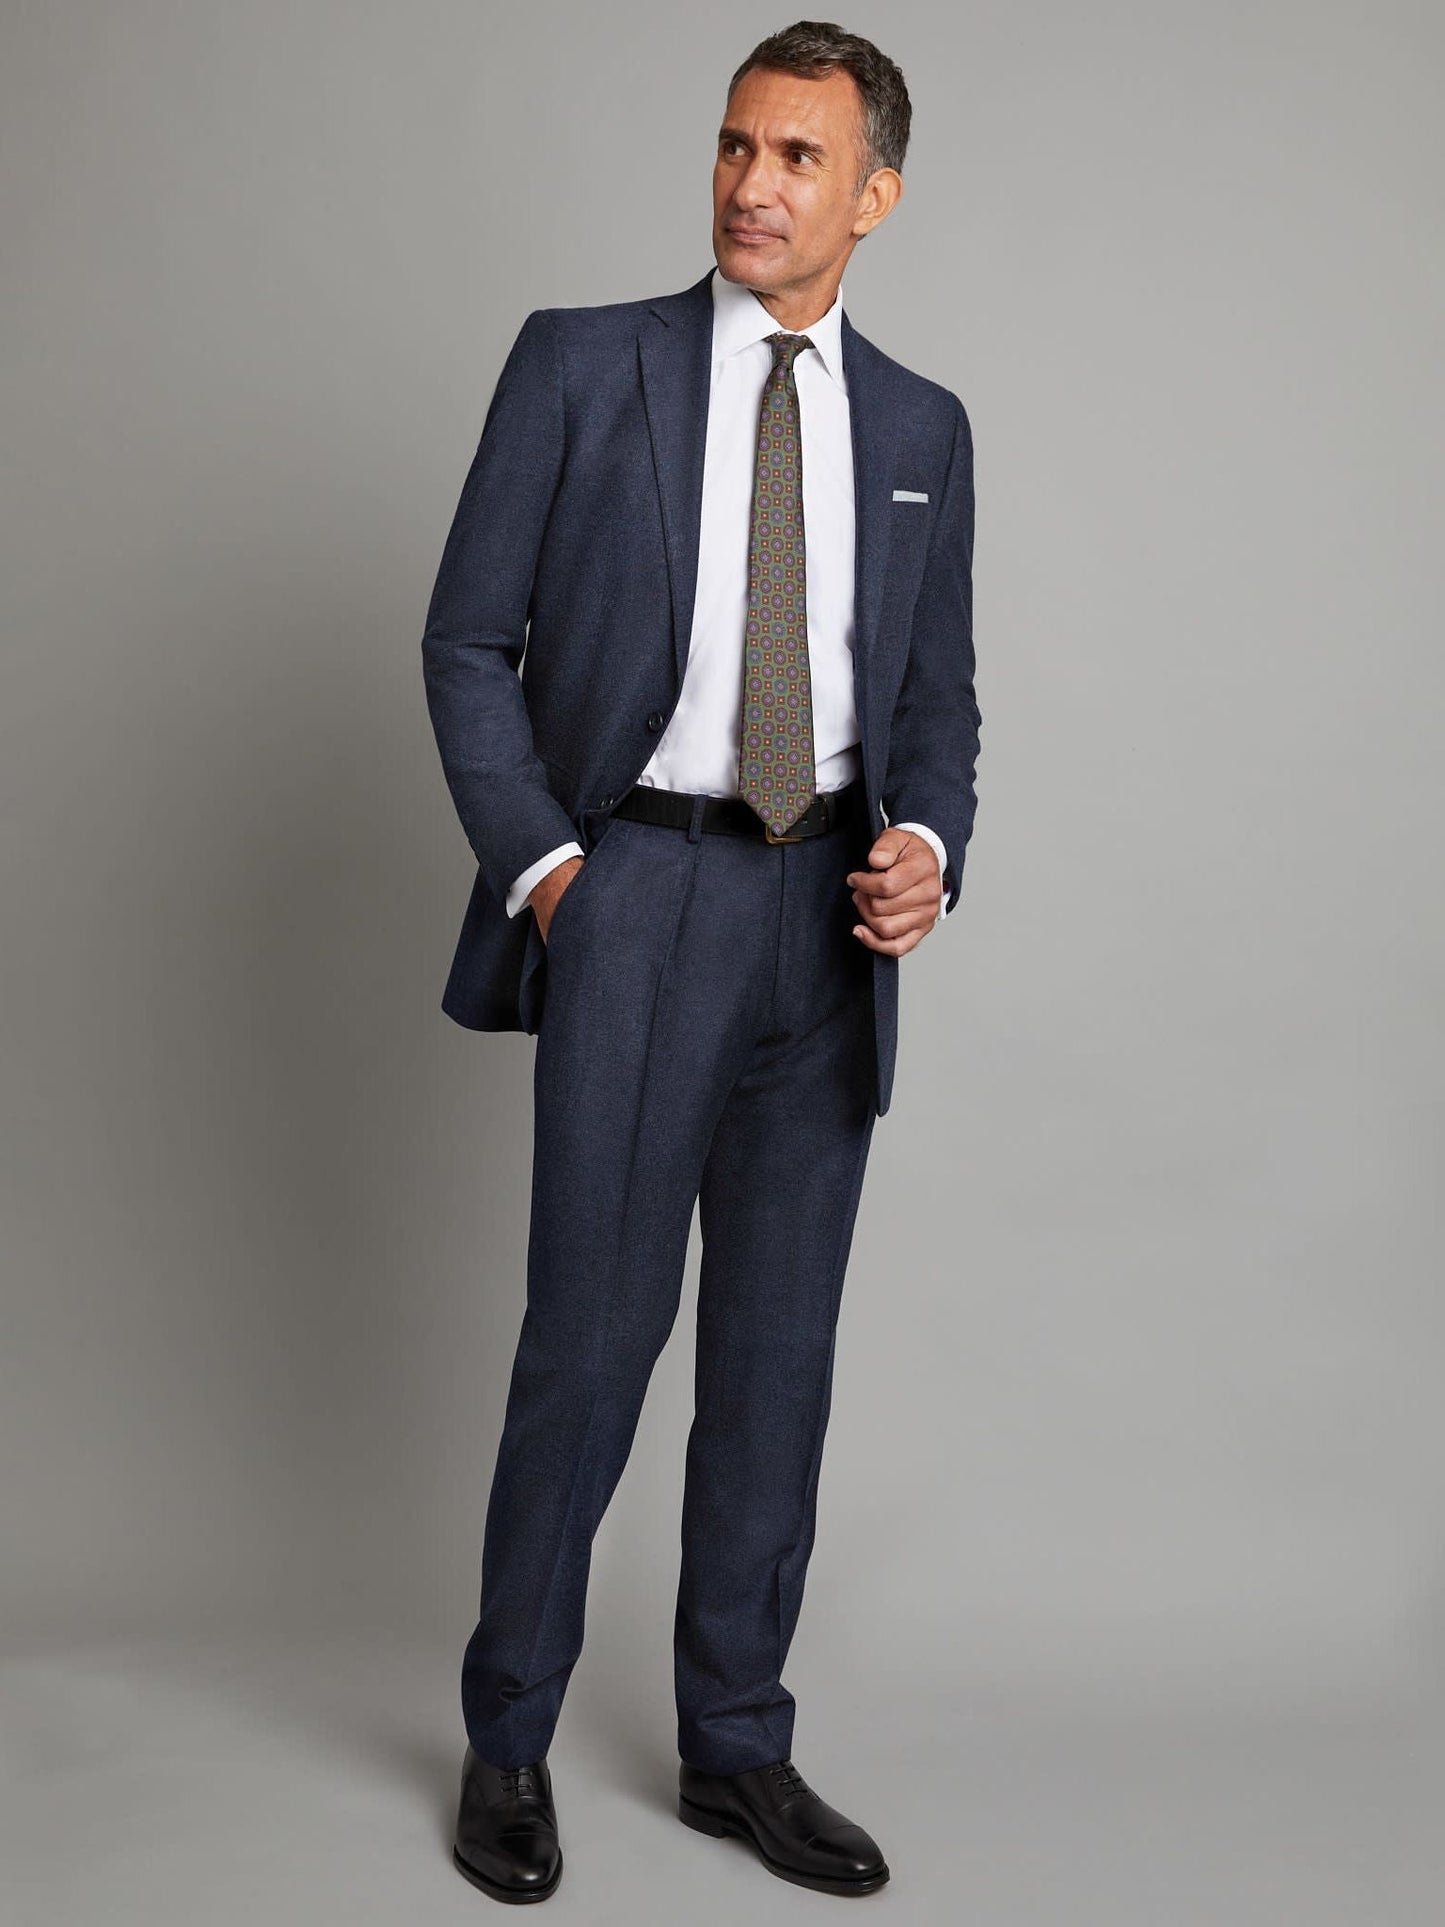 Eaton Suit - Navy Cashmere Blend